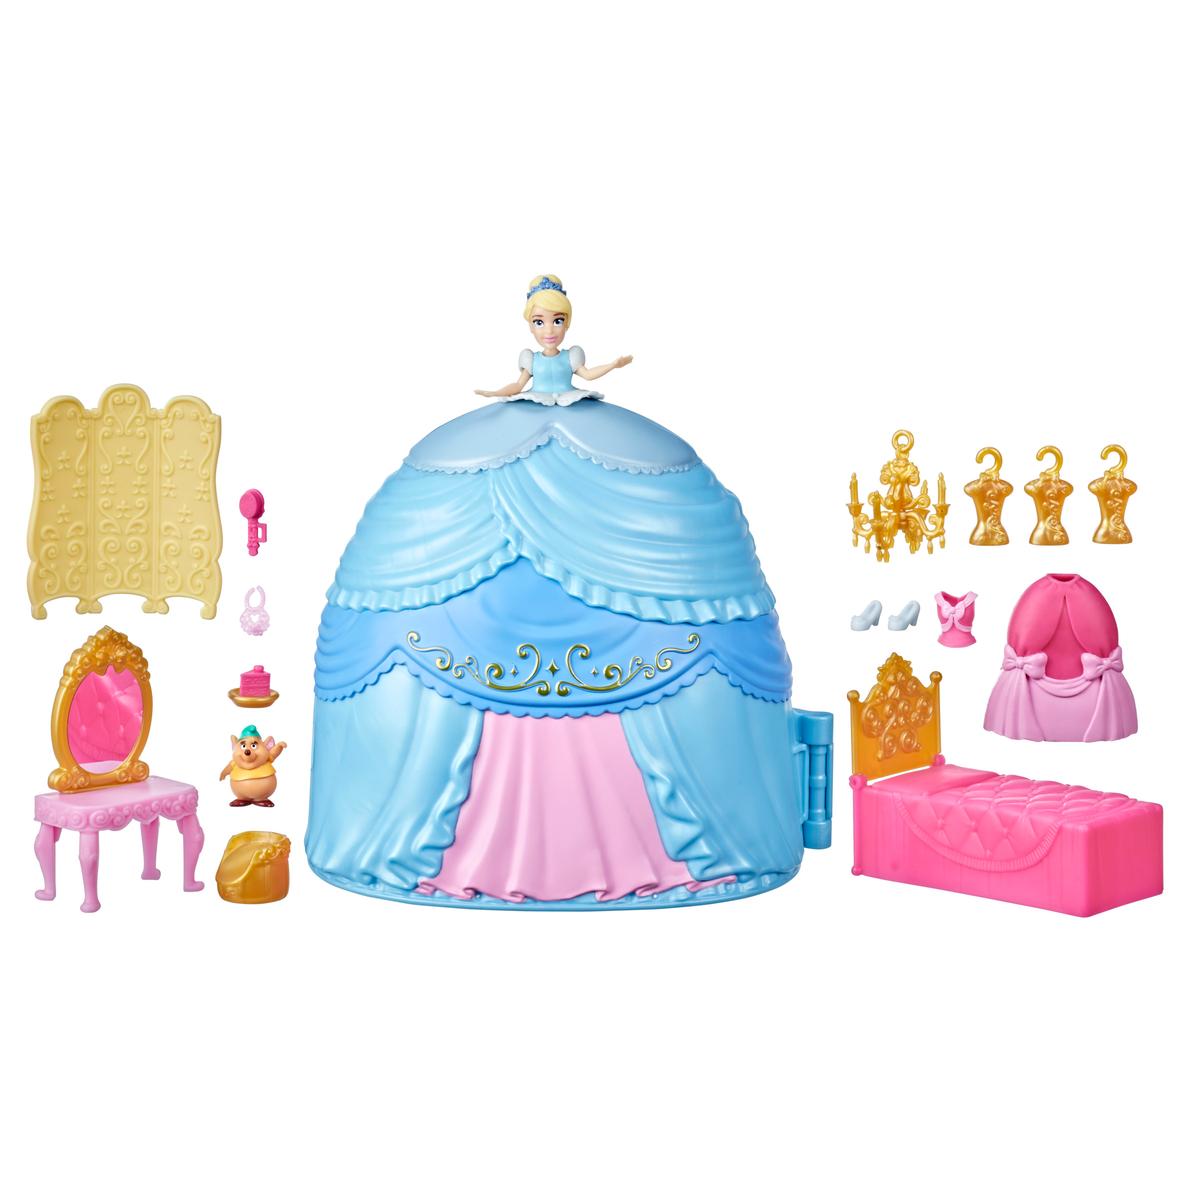 Princesas Disney - Cenicienta falda de ensueño | Muñecas Princesas Disney &  Accesorios | Toys